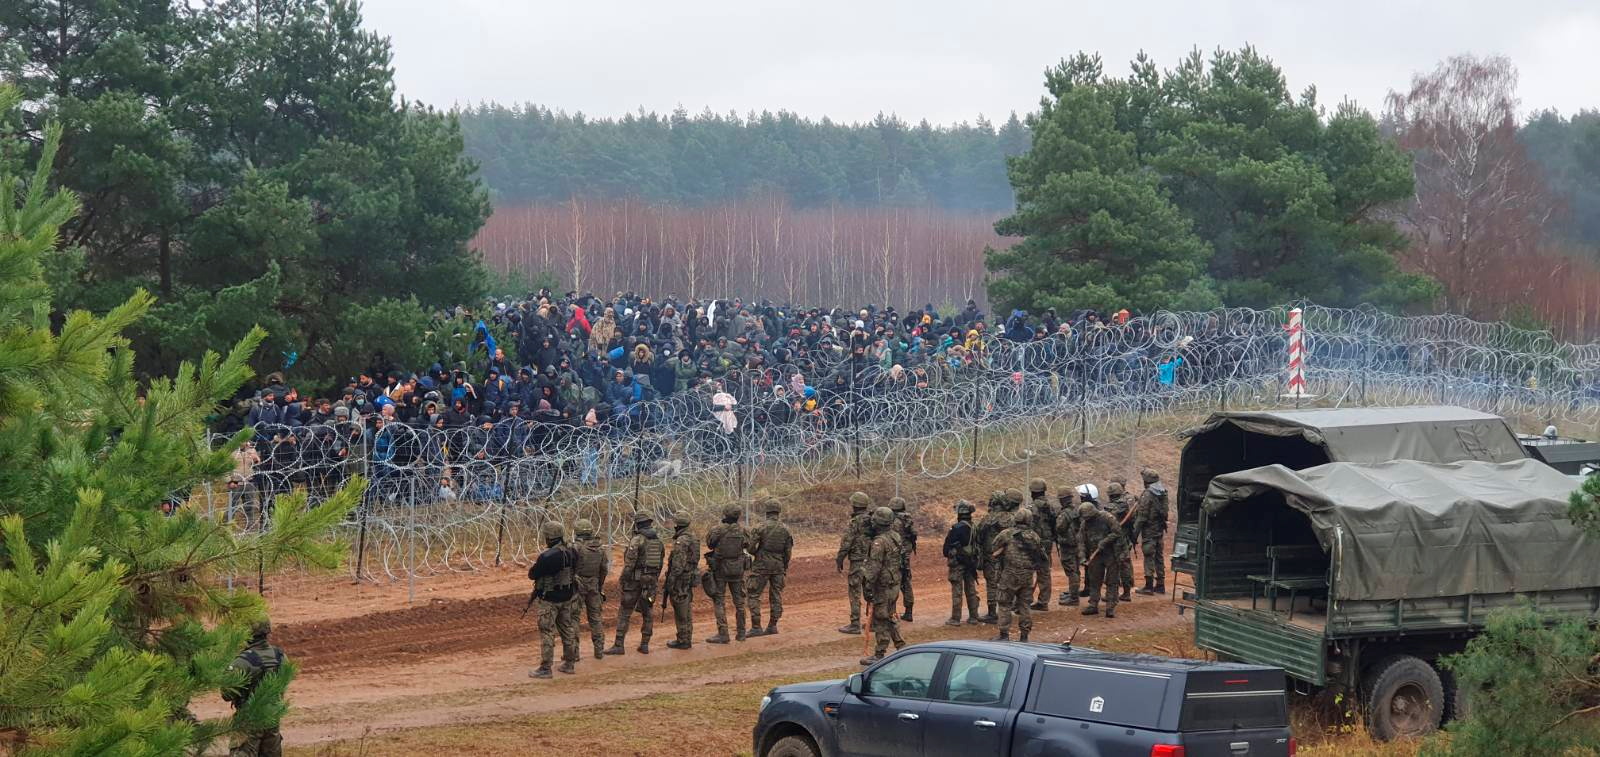 Λευκορωσία – Πολωνία: Συγκρούσεις και αλληλοκατηγορίες για τους εγκλωβισμένους μετανάστες